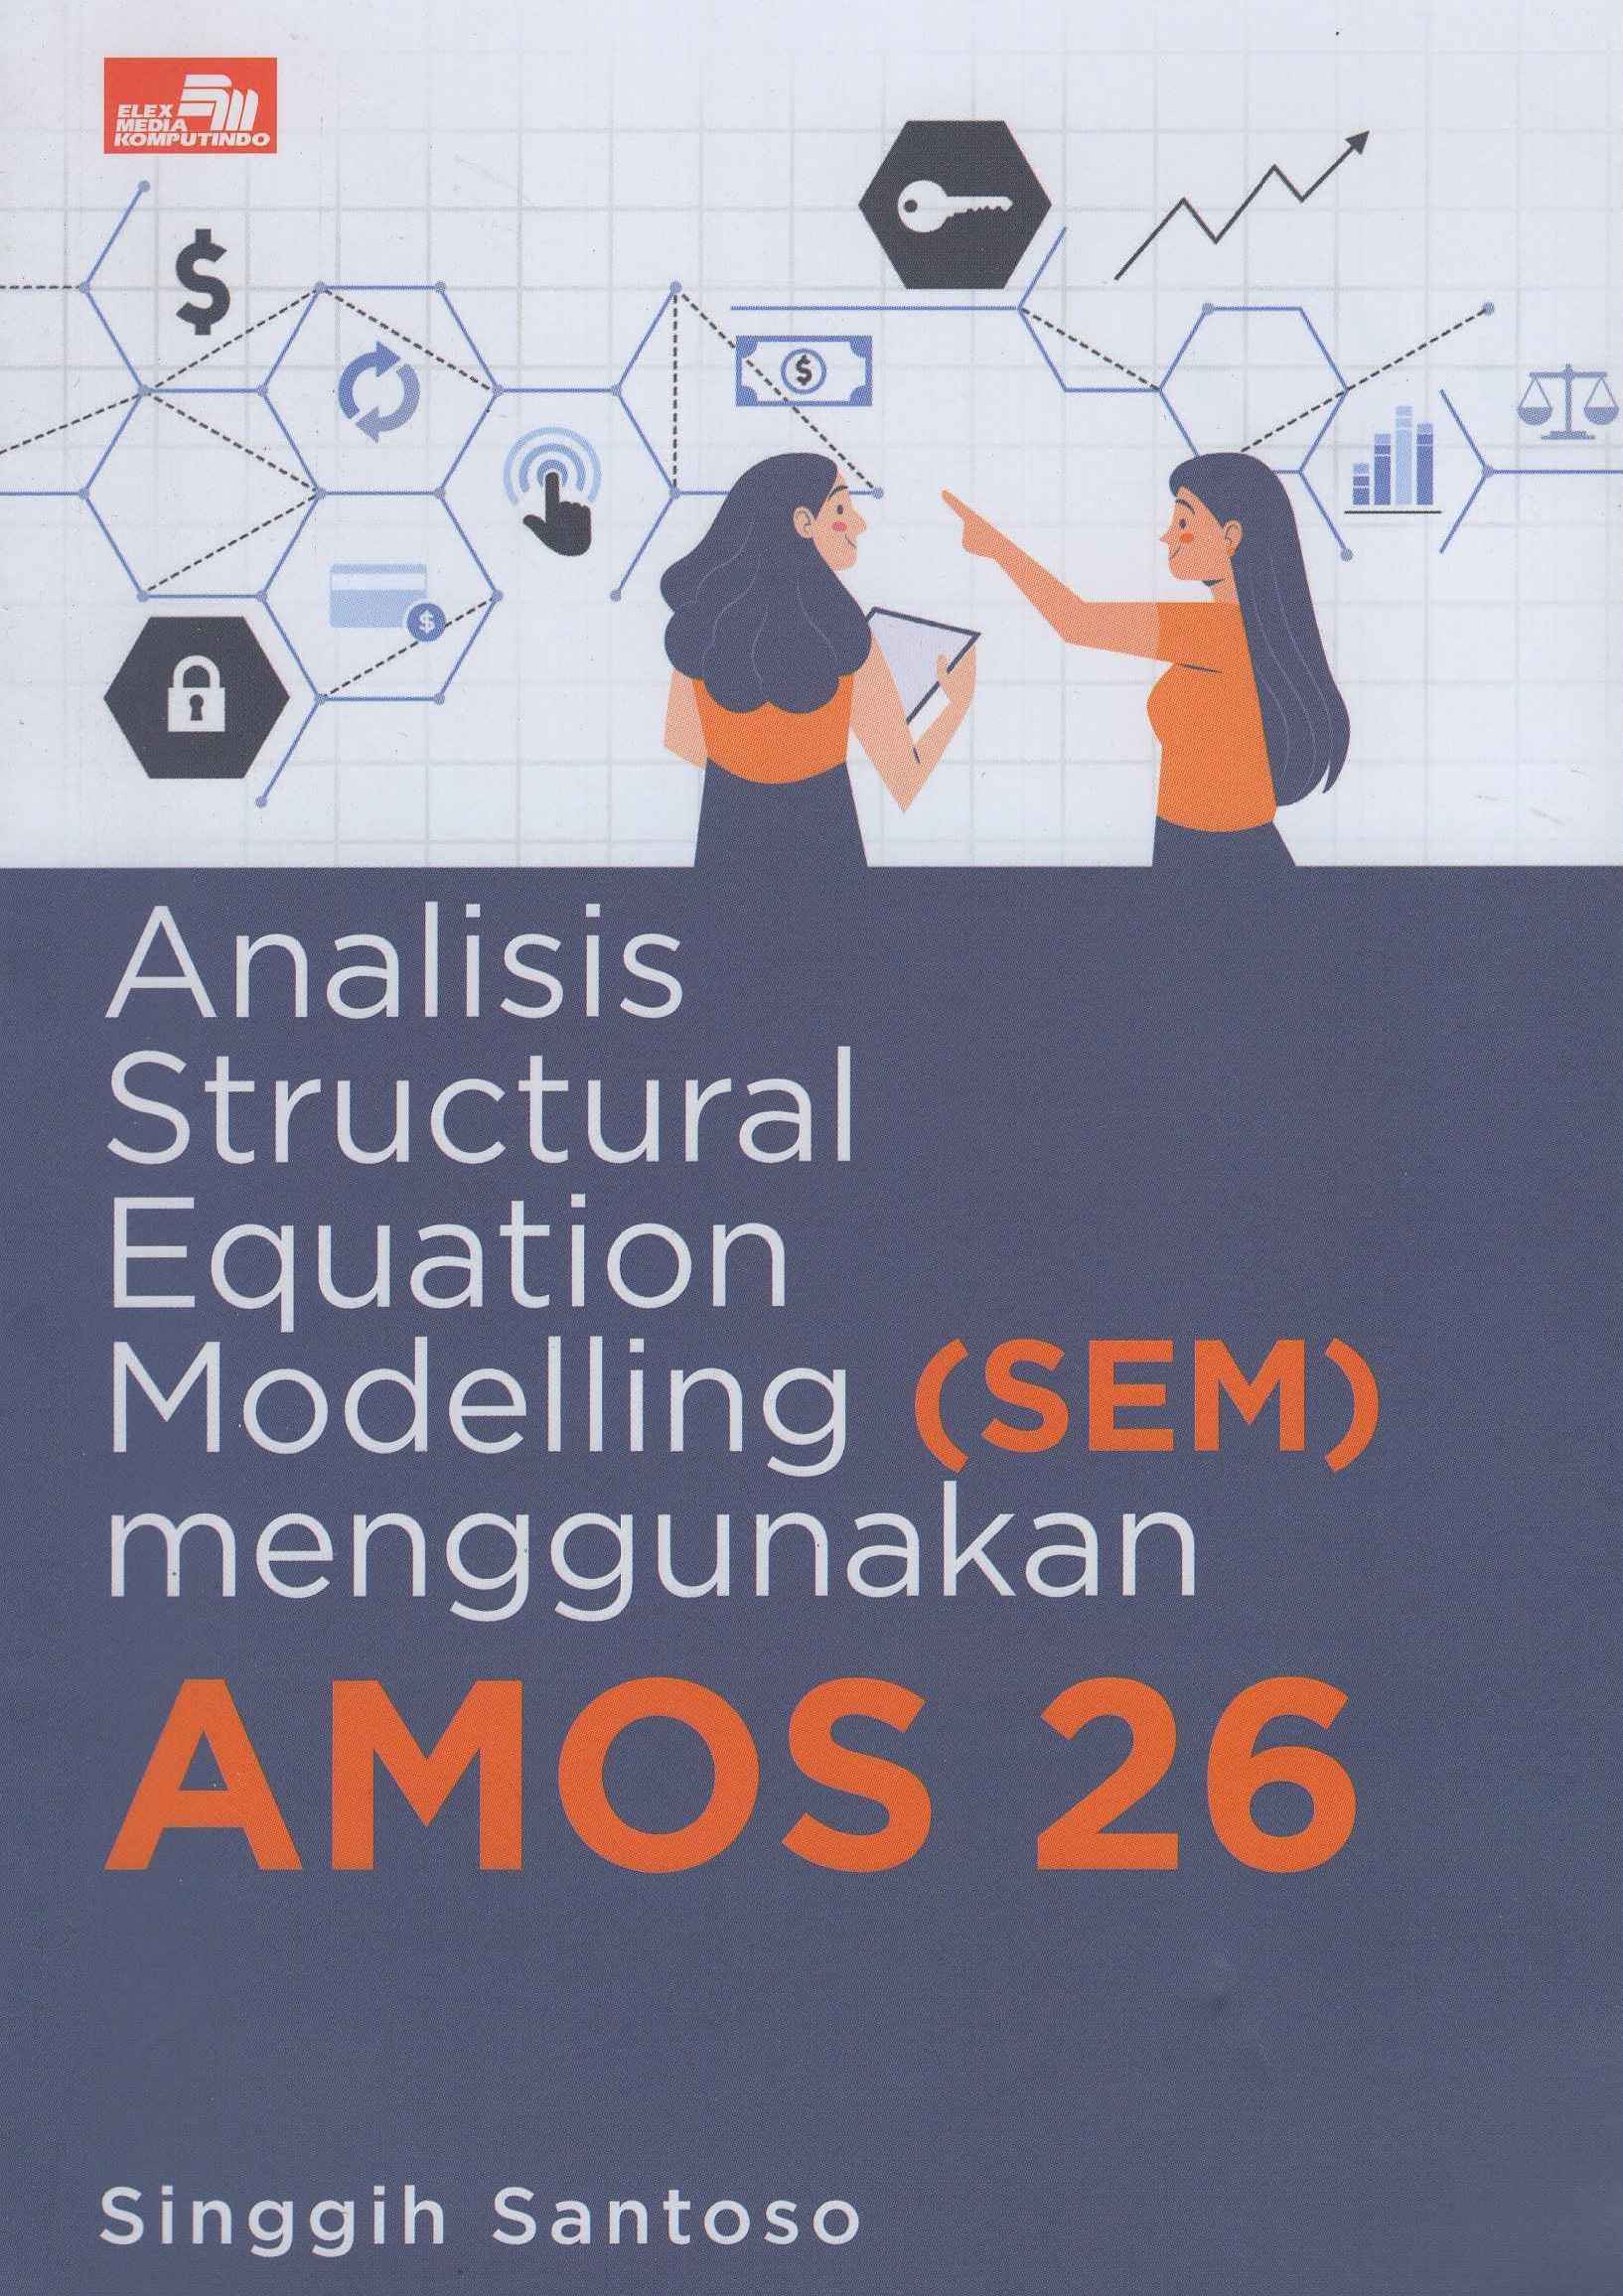 Analisis Structural Equation Modelling (SEM) menggunakan Amos 26